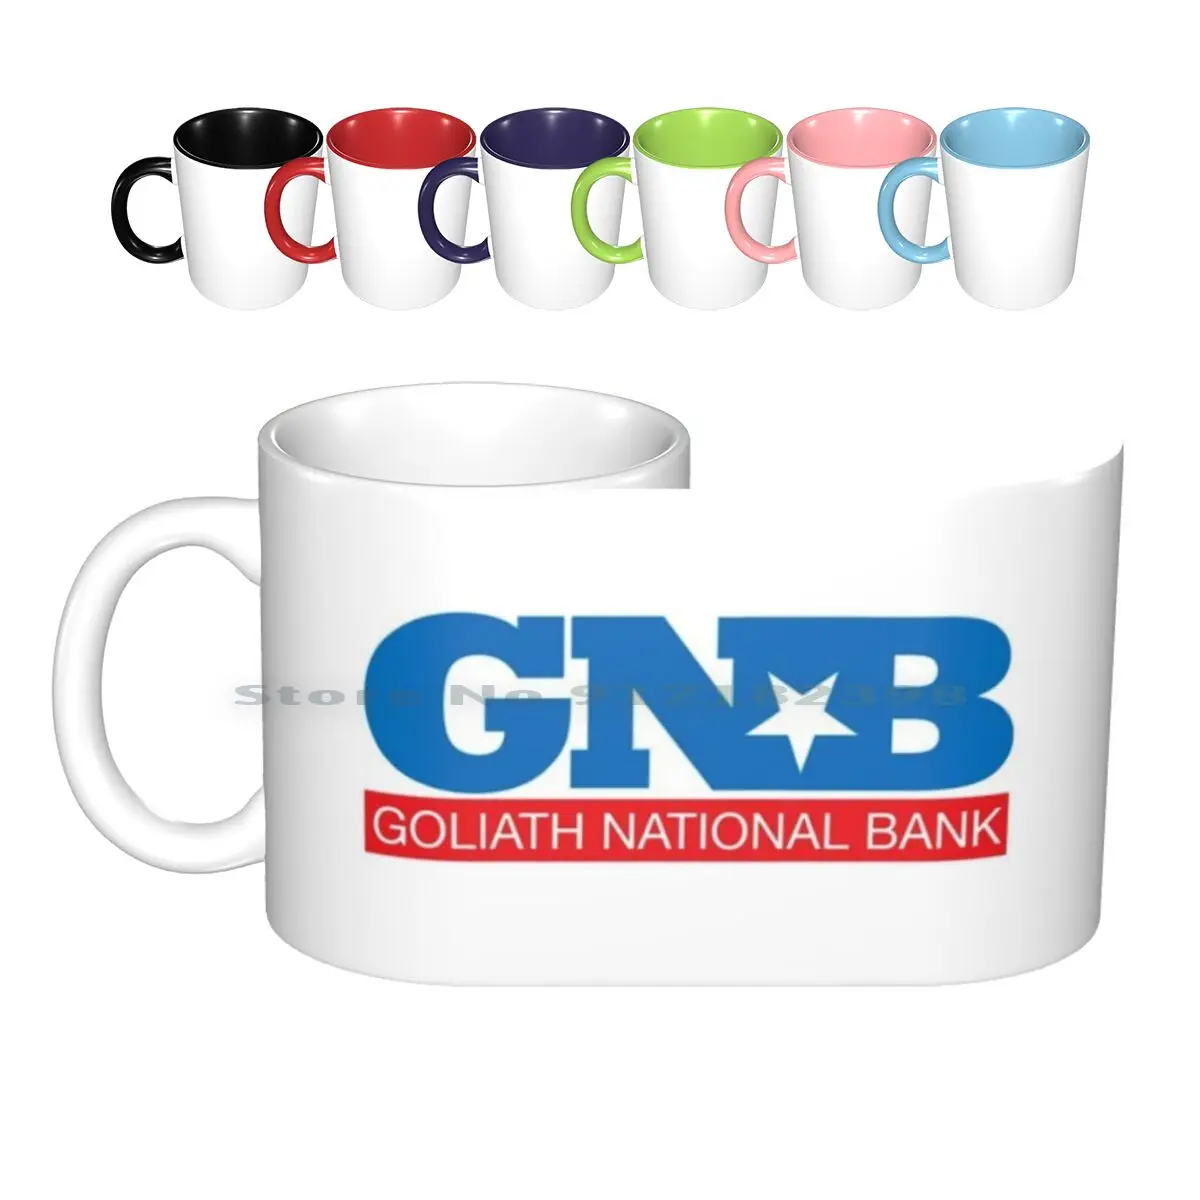 

Национальный банк Goliath-Как я встретил вашу маму, керамические кружки Himym, чашки для кофе, кружка для молока и чая Gnb Goliath, Национальный банк, ча...